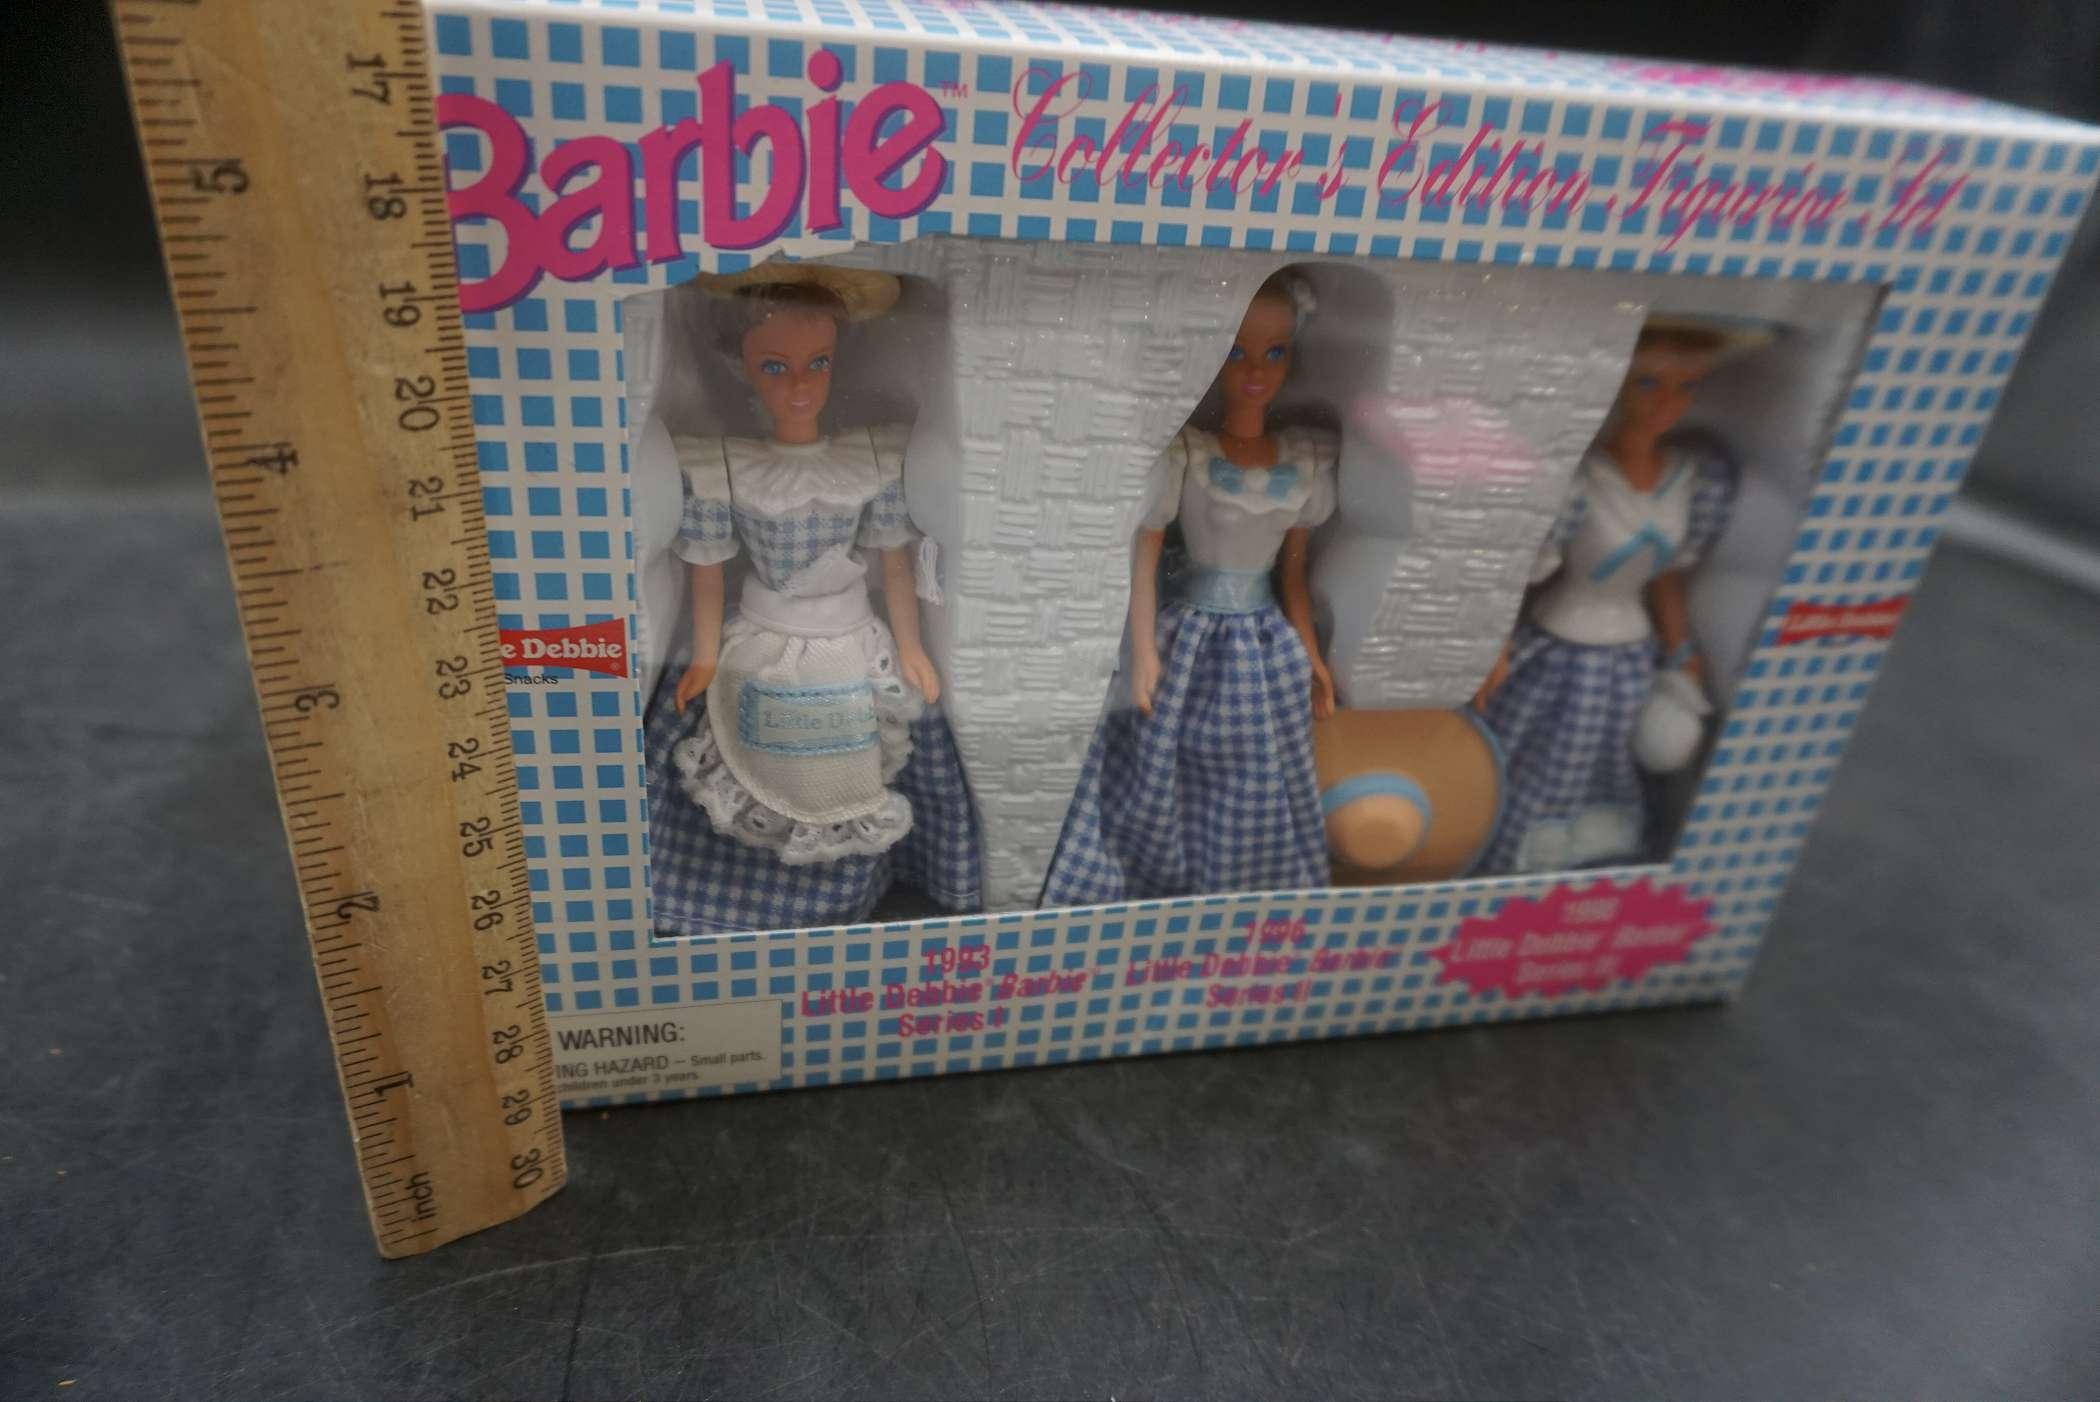 Barbie Collector'S Edition Figurine Set - Little Debbie